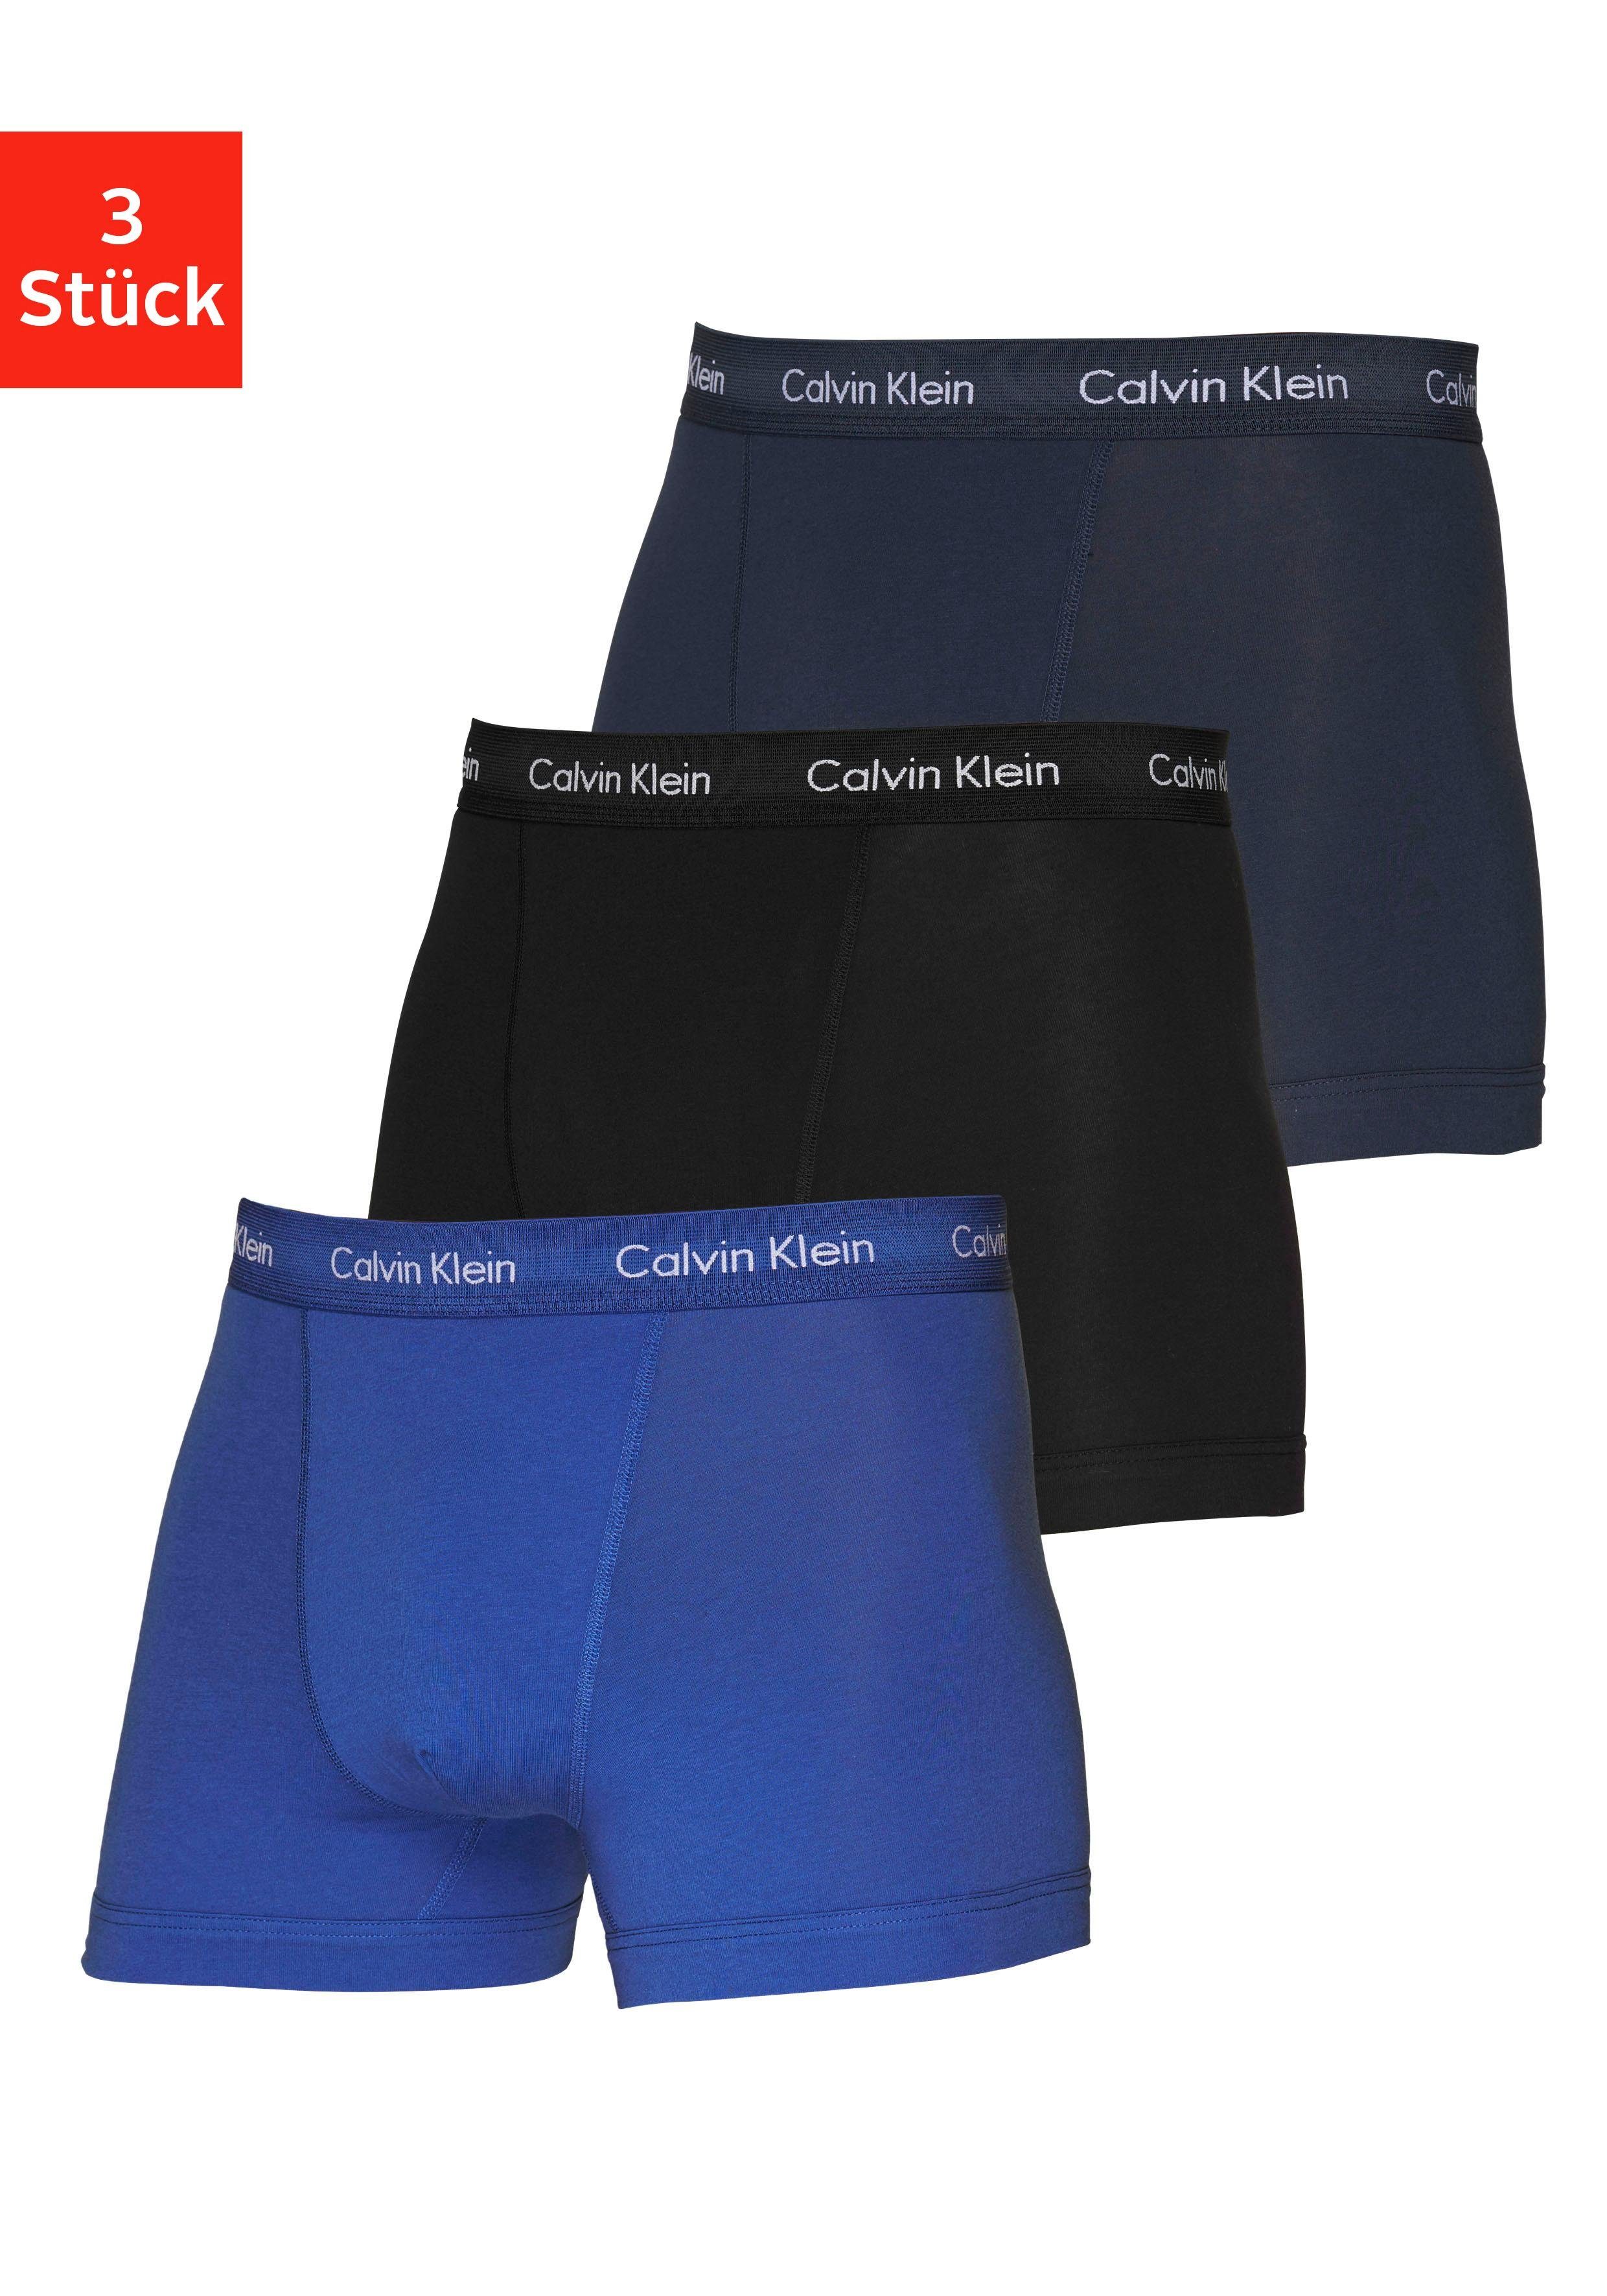 Calvin Klein Underwear Calvin Klein Boxer (3-St) in blautönen online kaufen  | OTTO